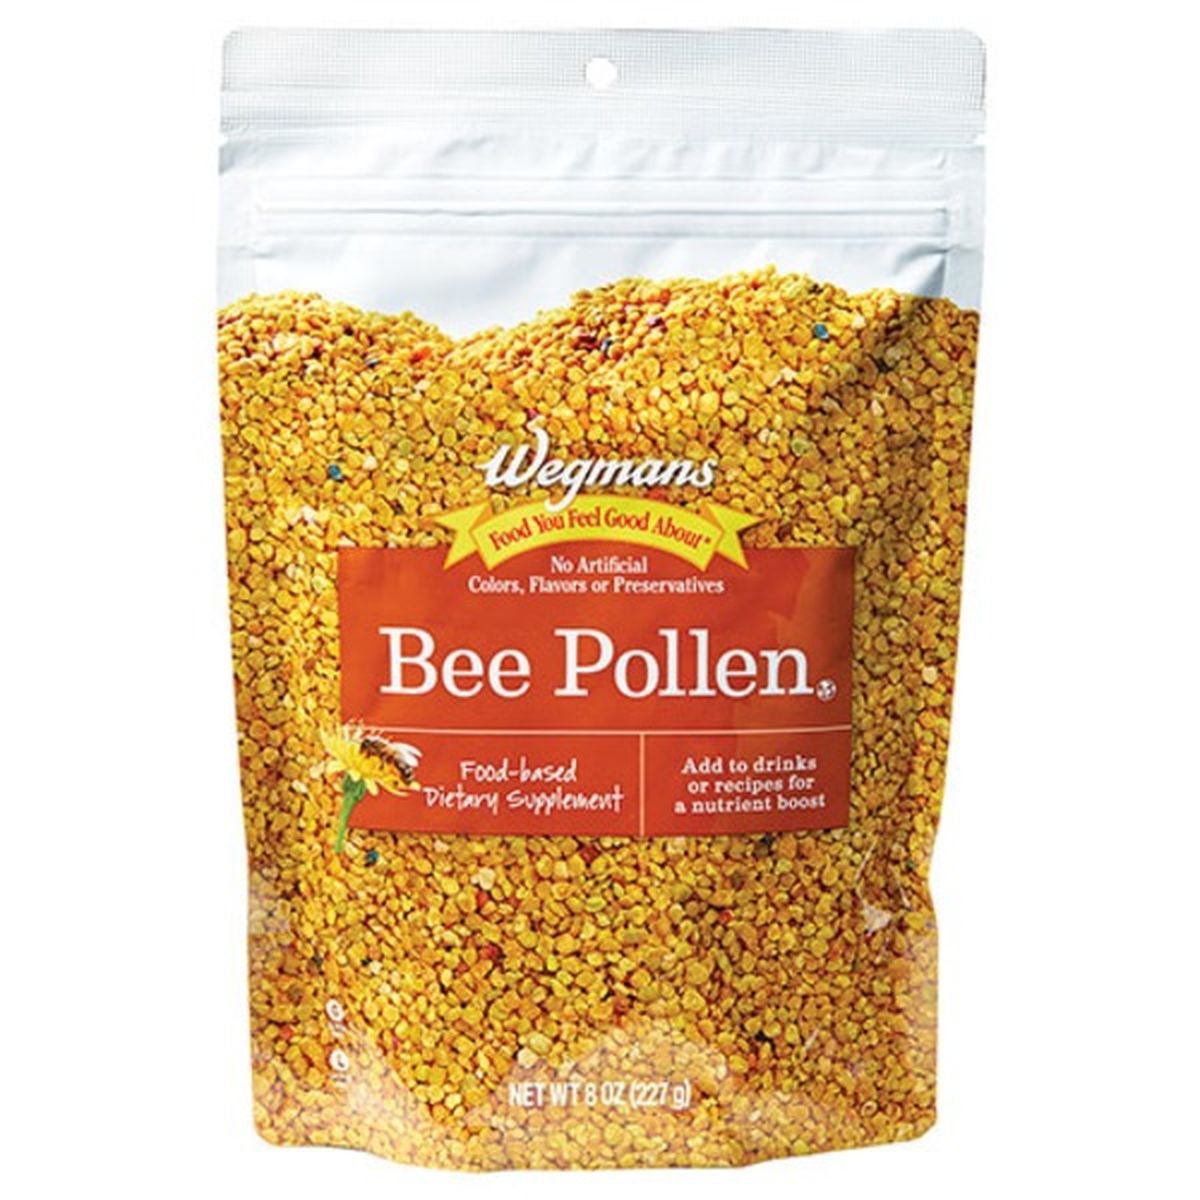 Calories in Wegmans Bee Pollen